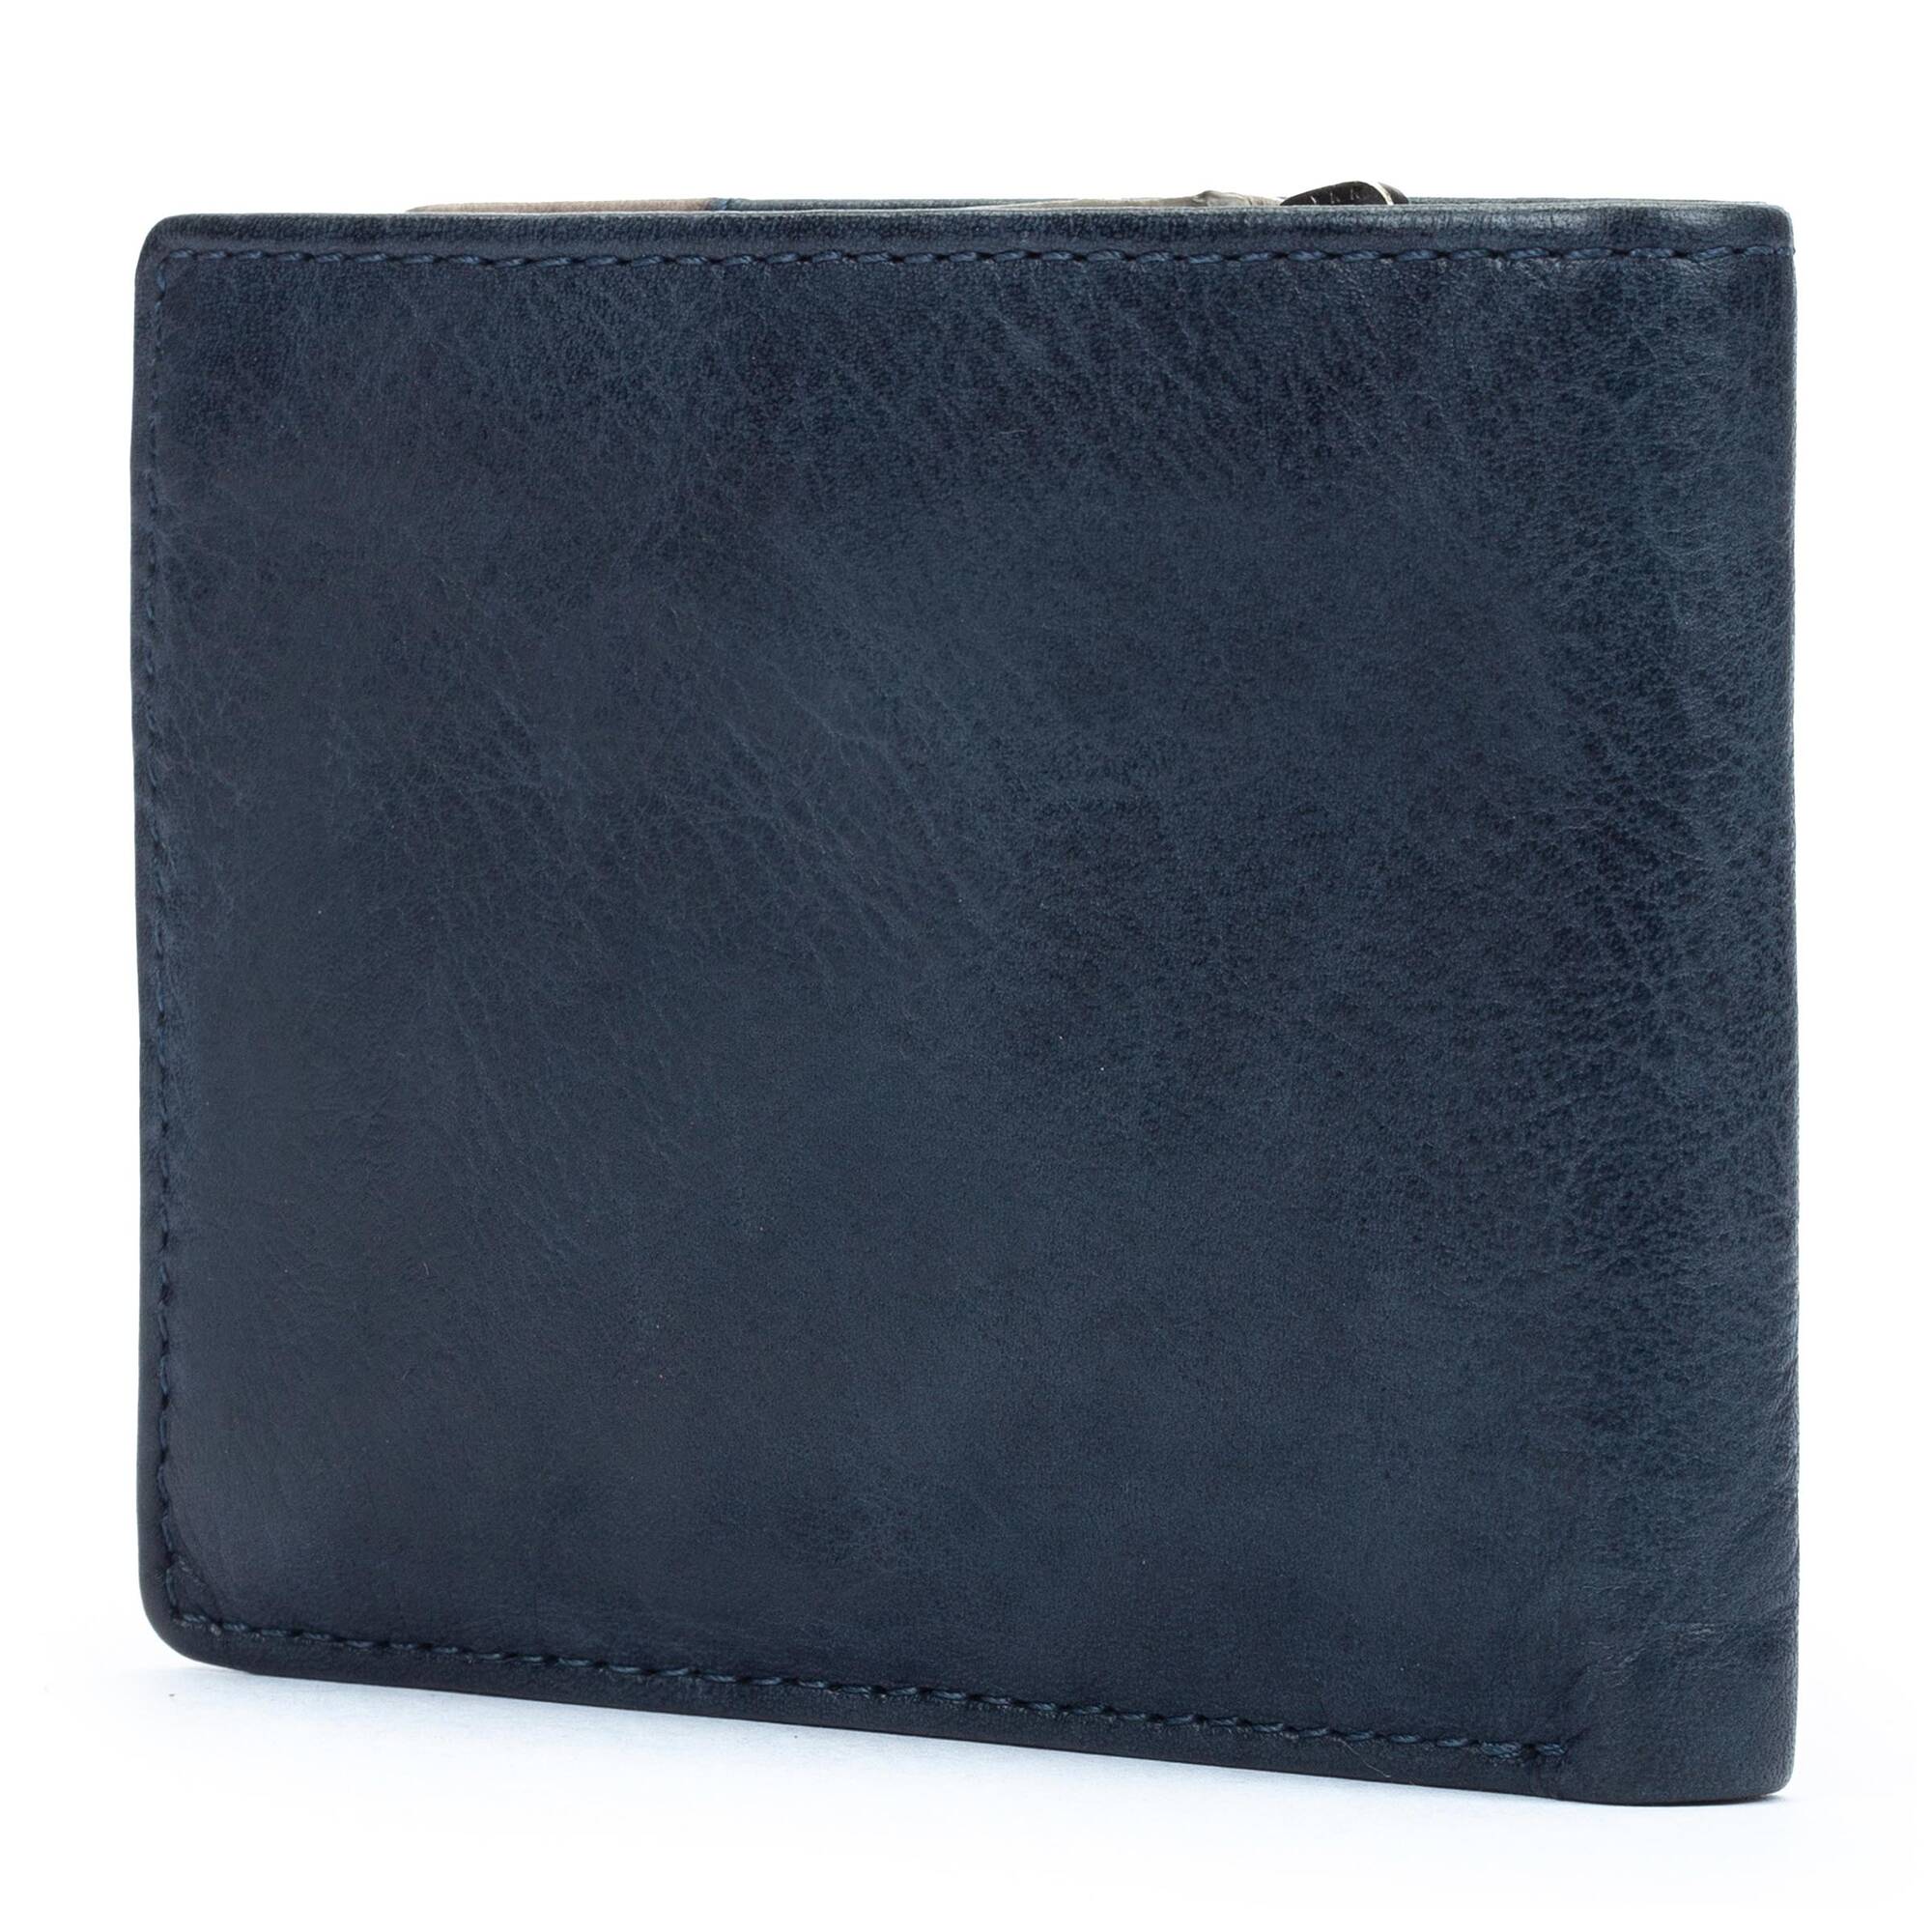 Zoom Wallets MAC-W211, BLUE, large